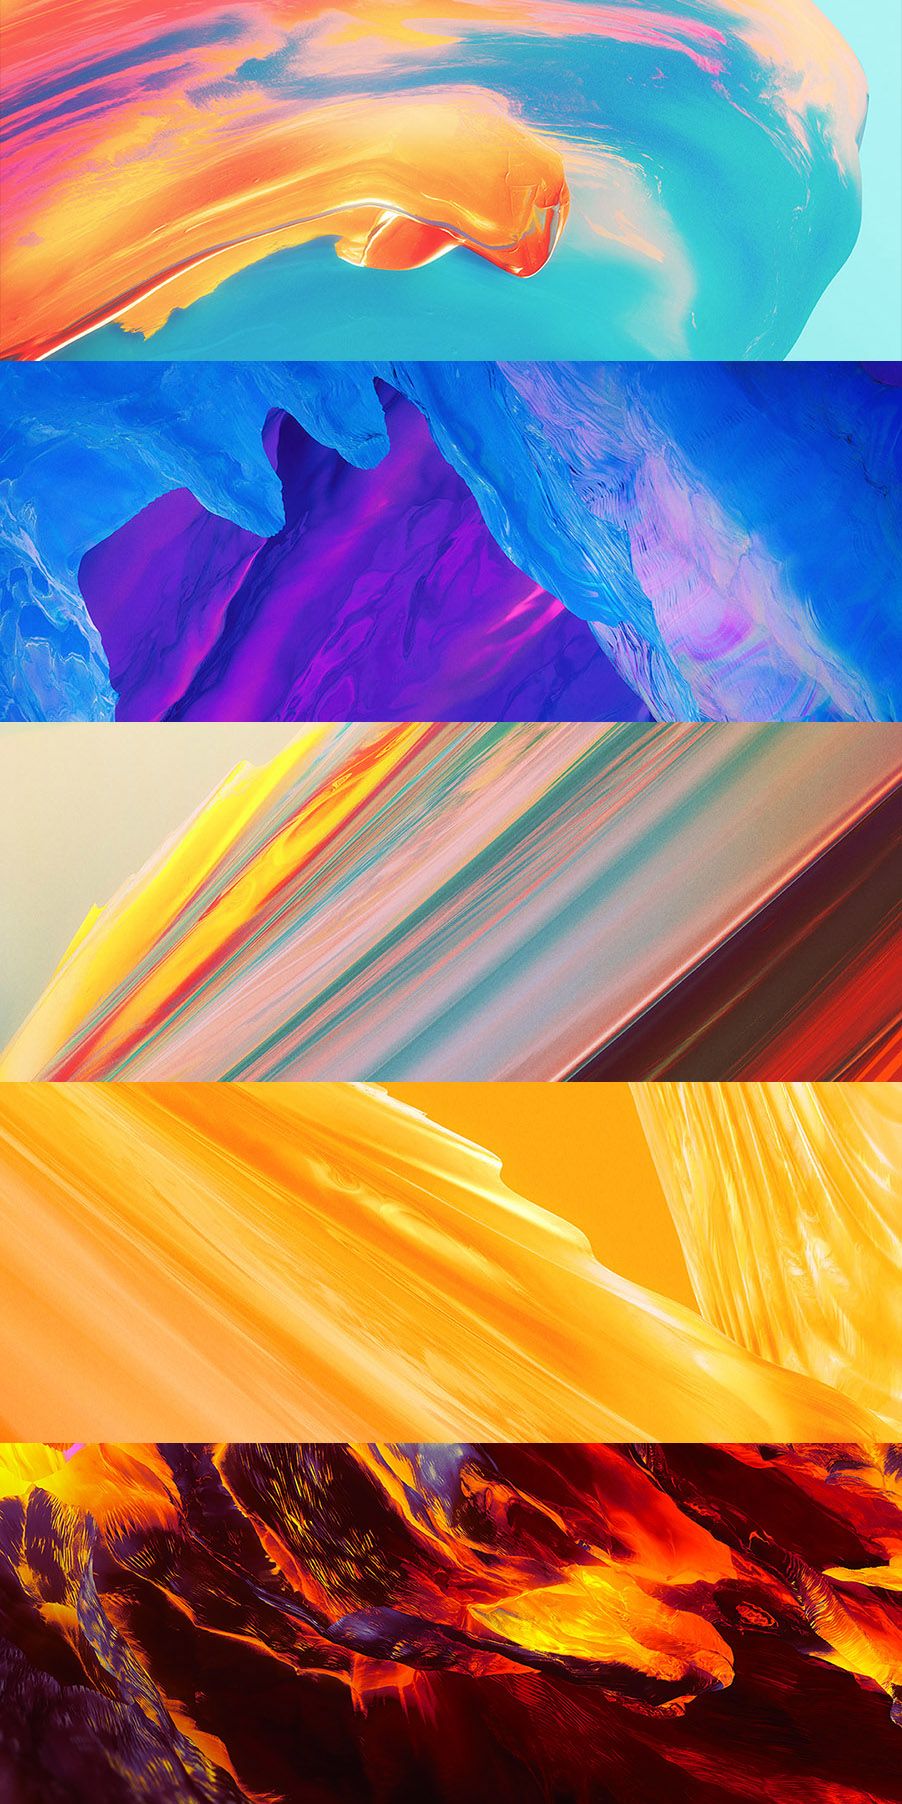 OnePlus 5T Wallpapers — Hampus Olsson - Portfolio of 2021